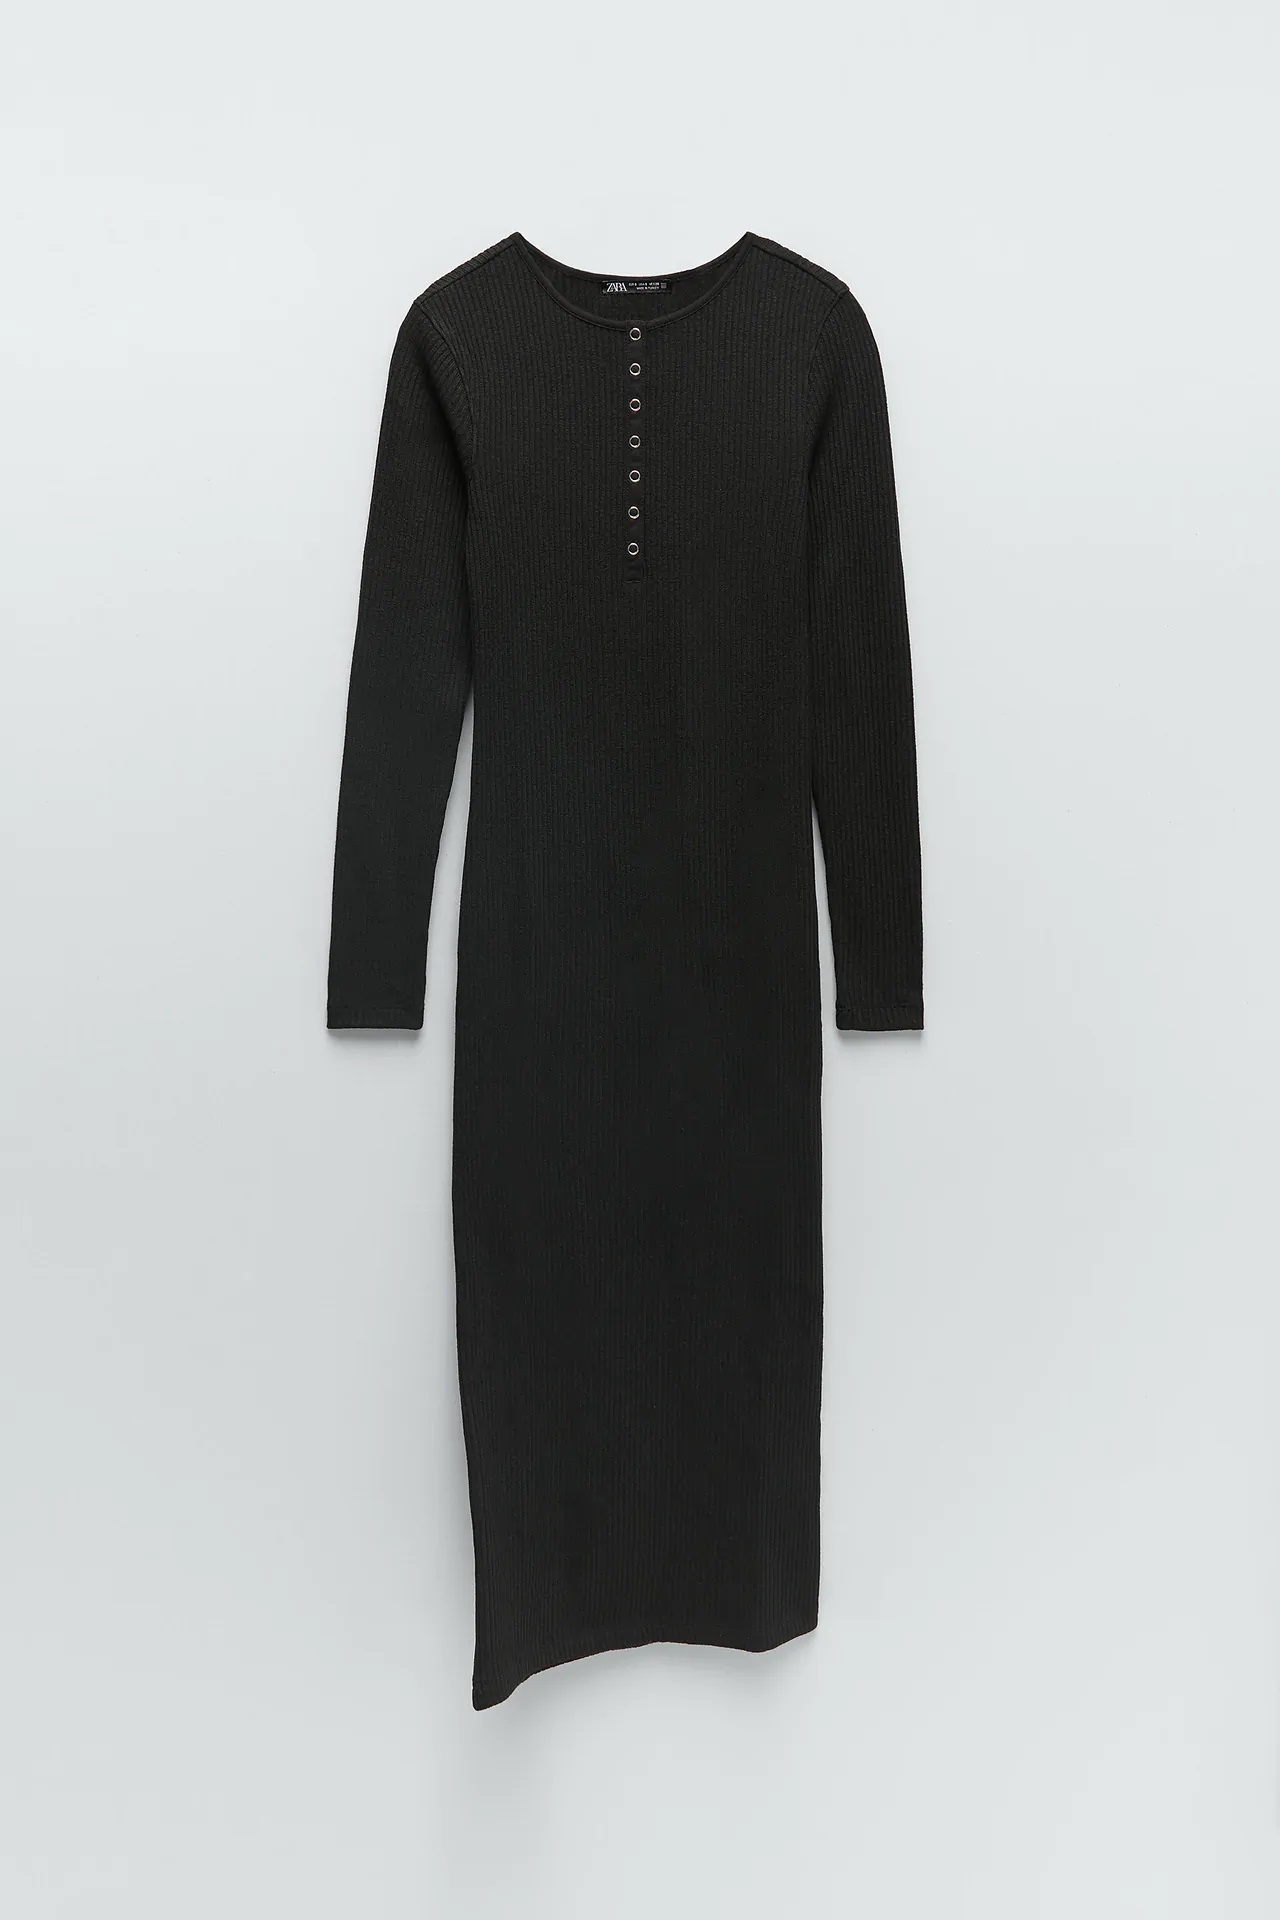 Letizia la ‘reina negra’: 5 vestidos midi negros de las rebajas de Zara de su estilo